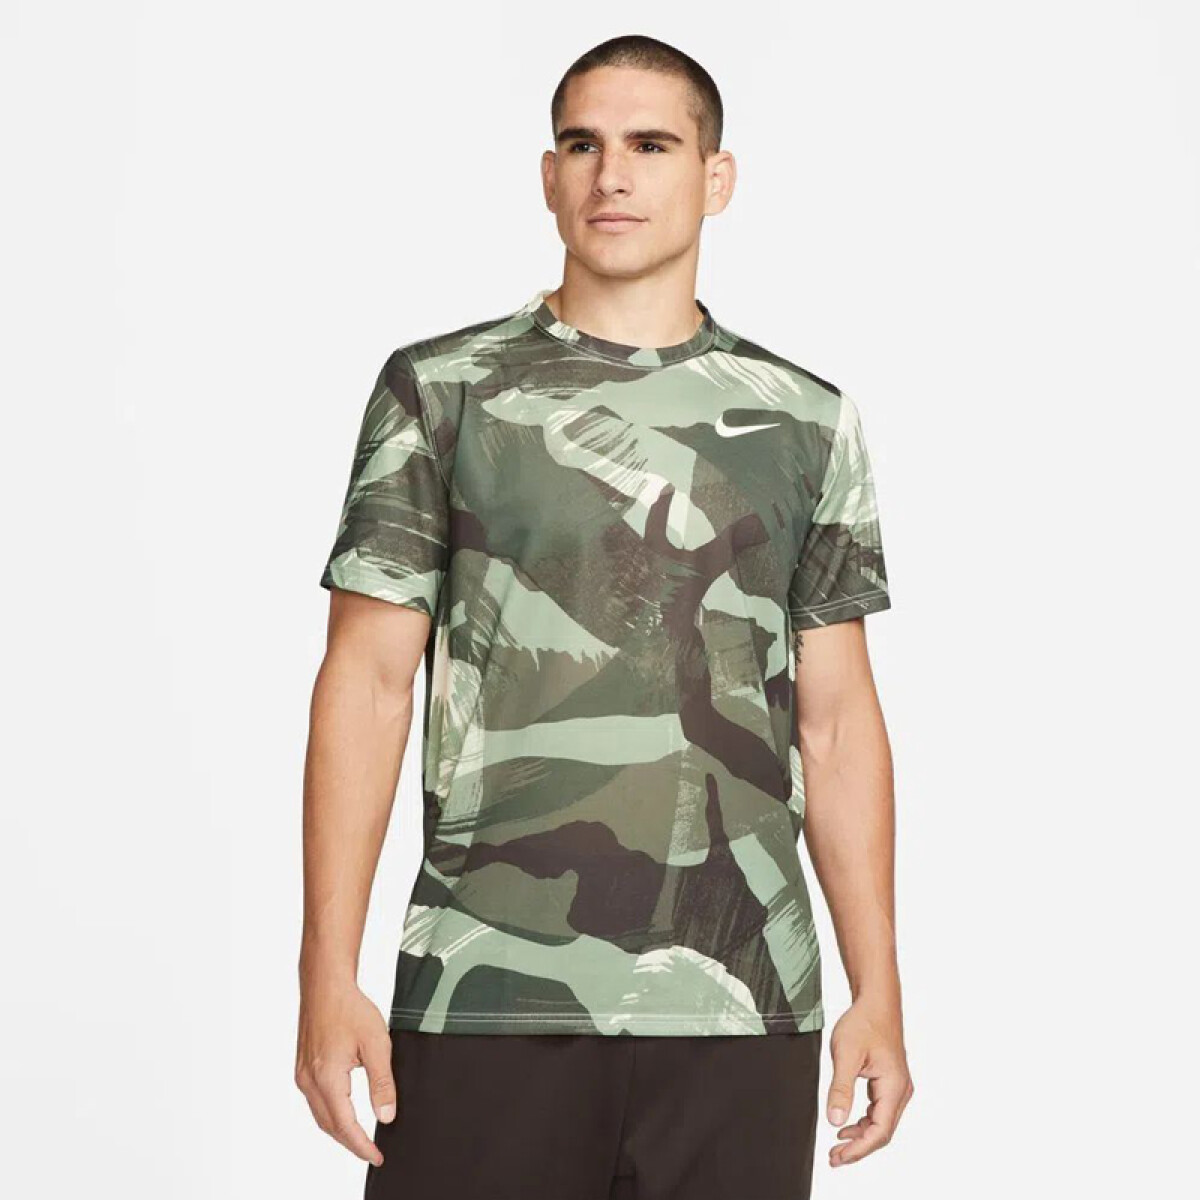 Remera Nike Dri-fit Camouflage 